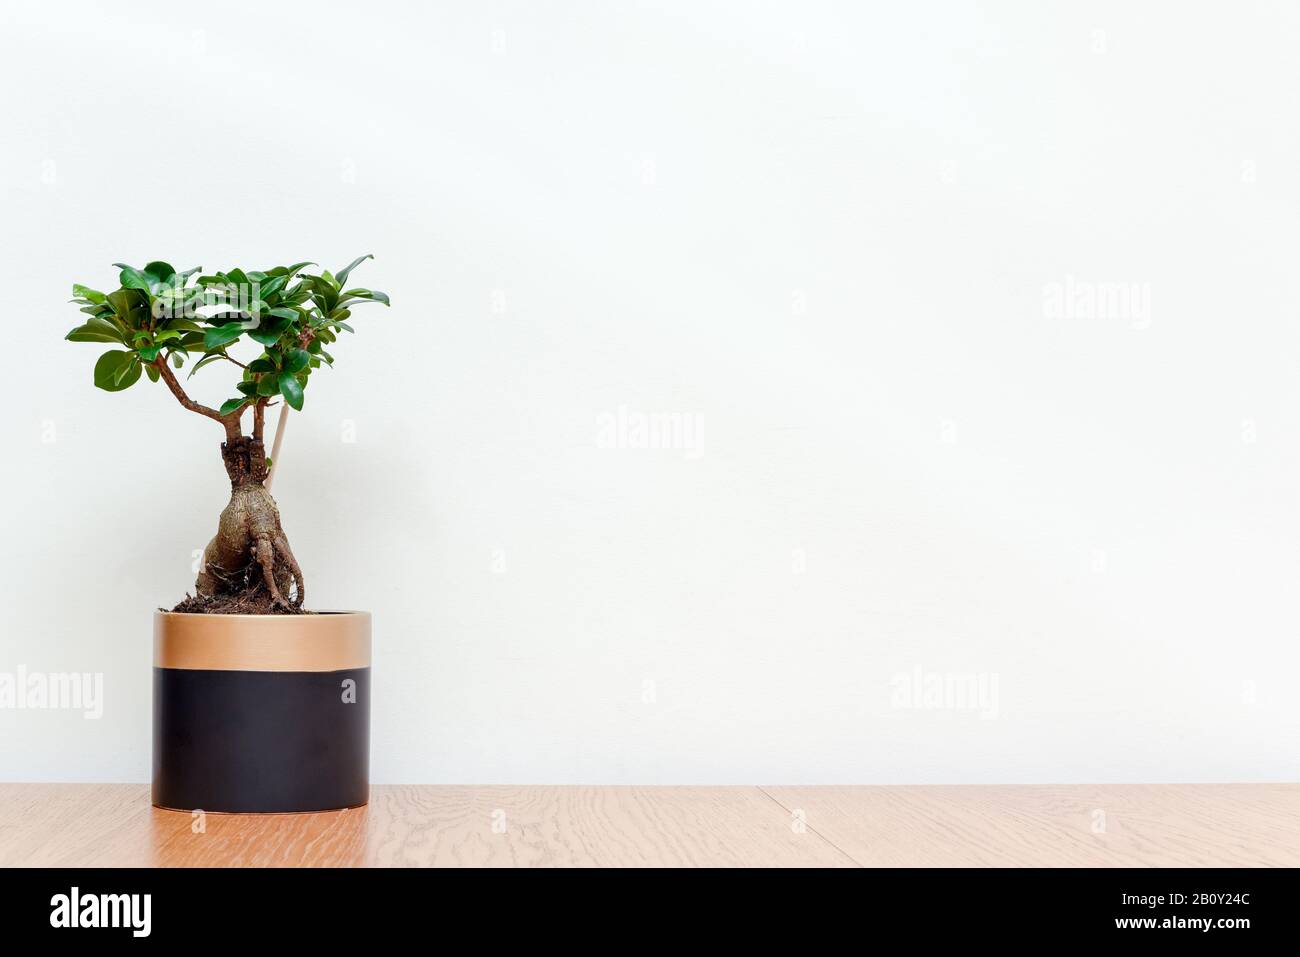 Árbol Bonsai en interior moderno con fondo blanco pared árbol miniatura para crecer en maceta para jardín interior Foto de stock